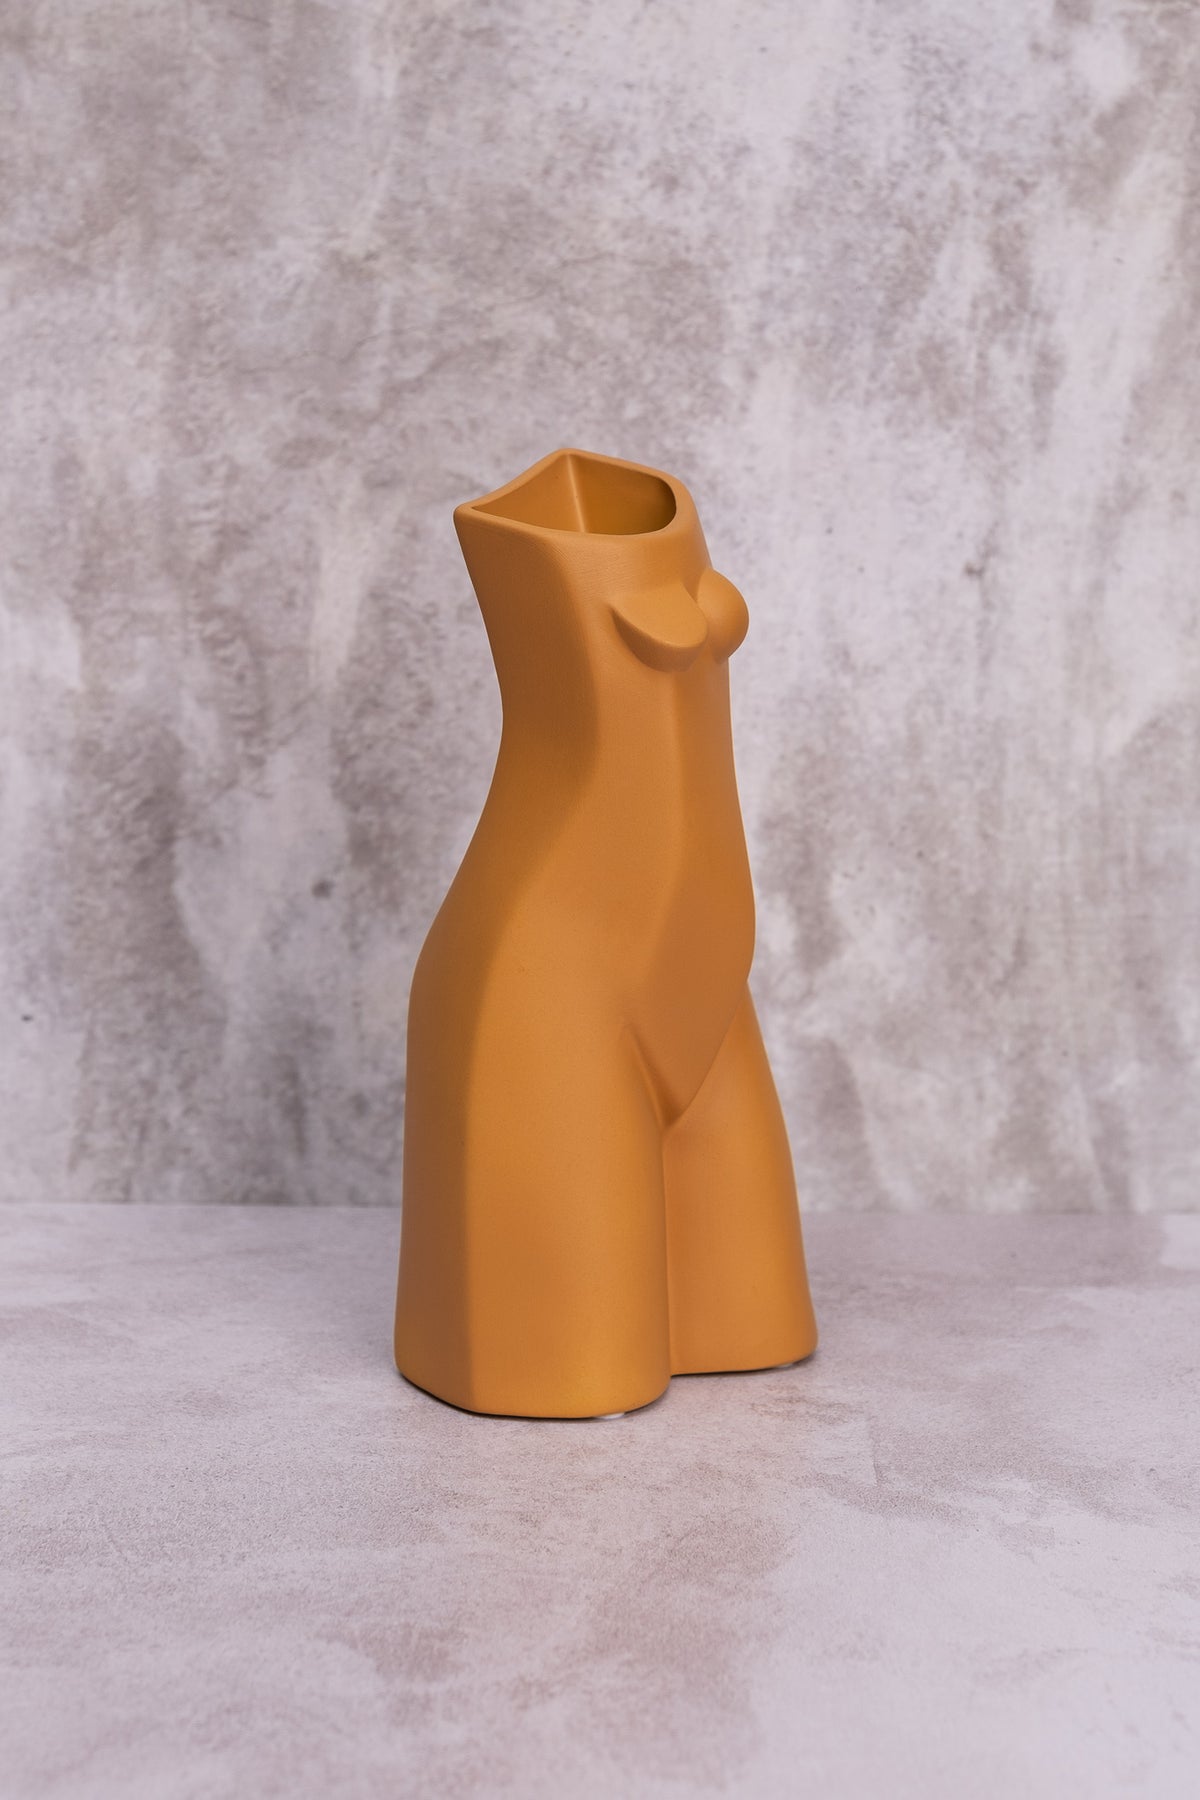 Peachy Priscilla Ceramic Vase